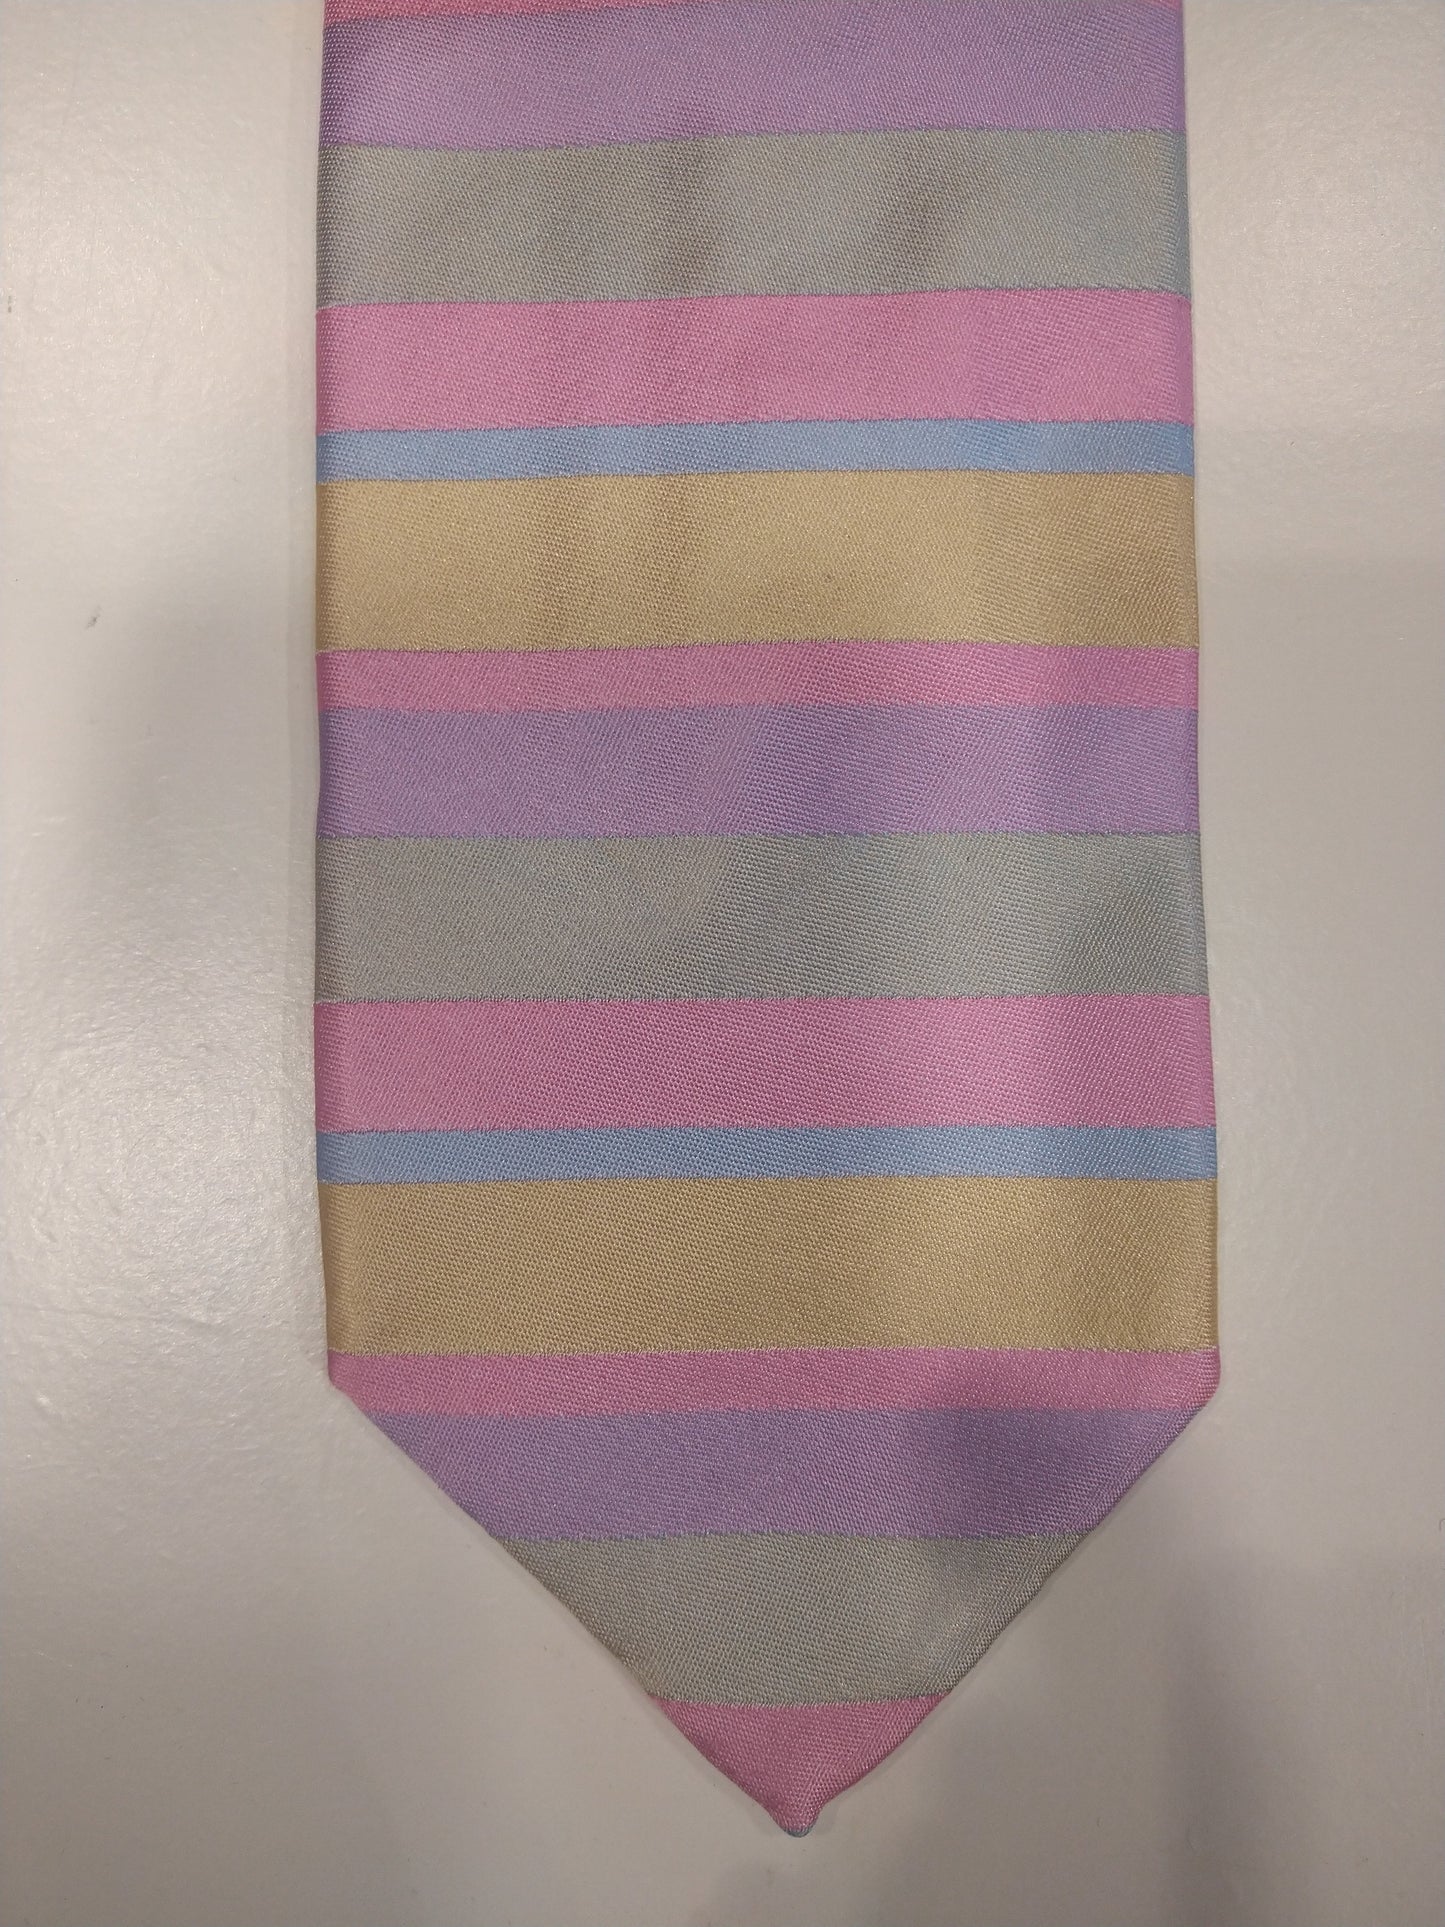 La main de Jay Pee faite dans une cravate en soie de Como. Rayé rose / violet / bleu / jaune.